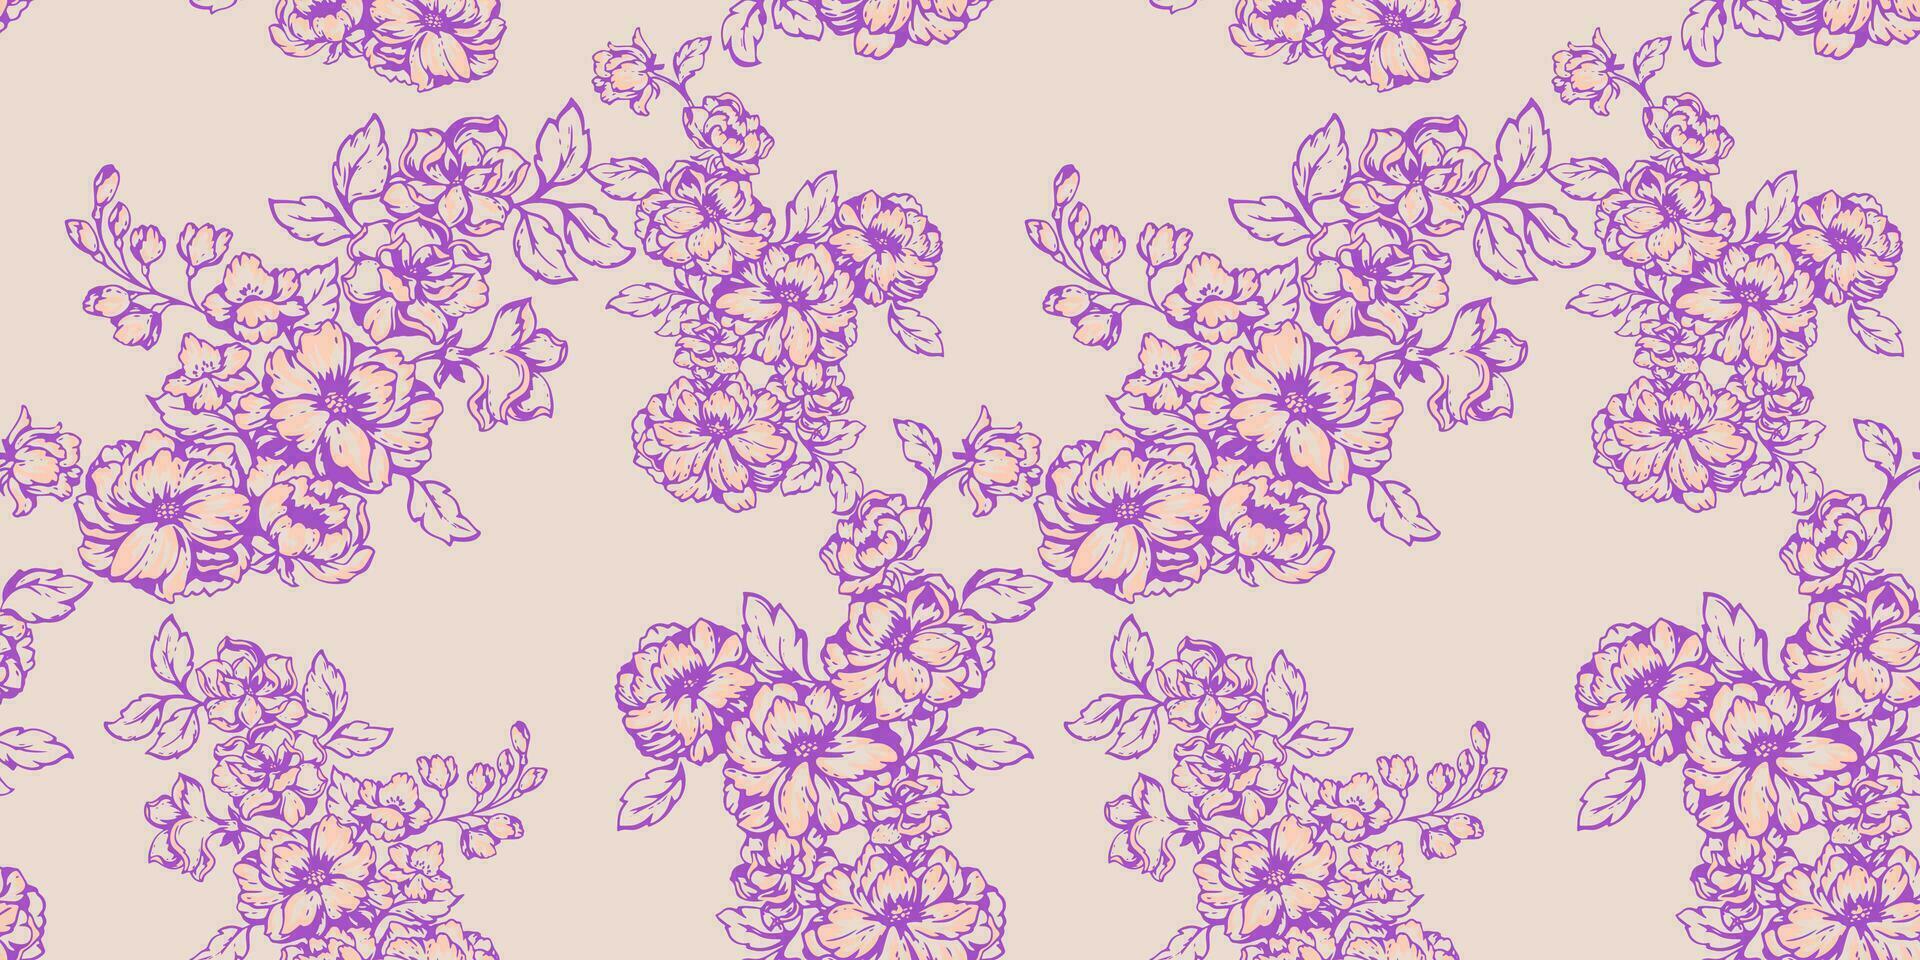 sömlös kreativ blomning blommig grenar mönster på en ljus bakgrund. vektor hand dragen skiss rader, form blommor stam. mall för textil, mode, skriva ut, yta design, tyg